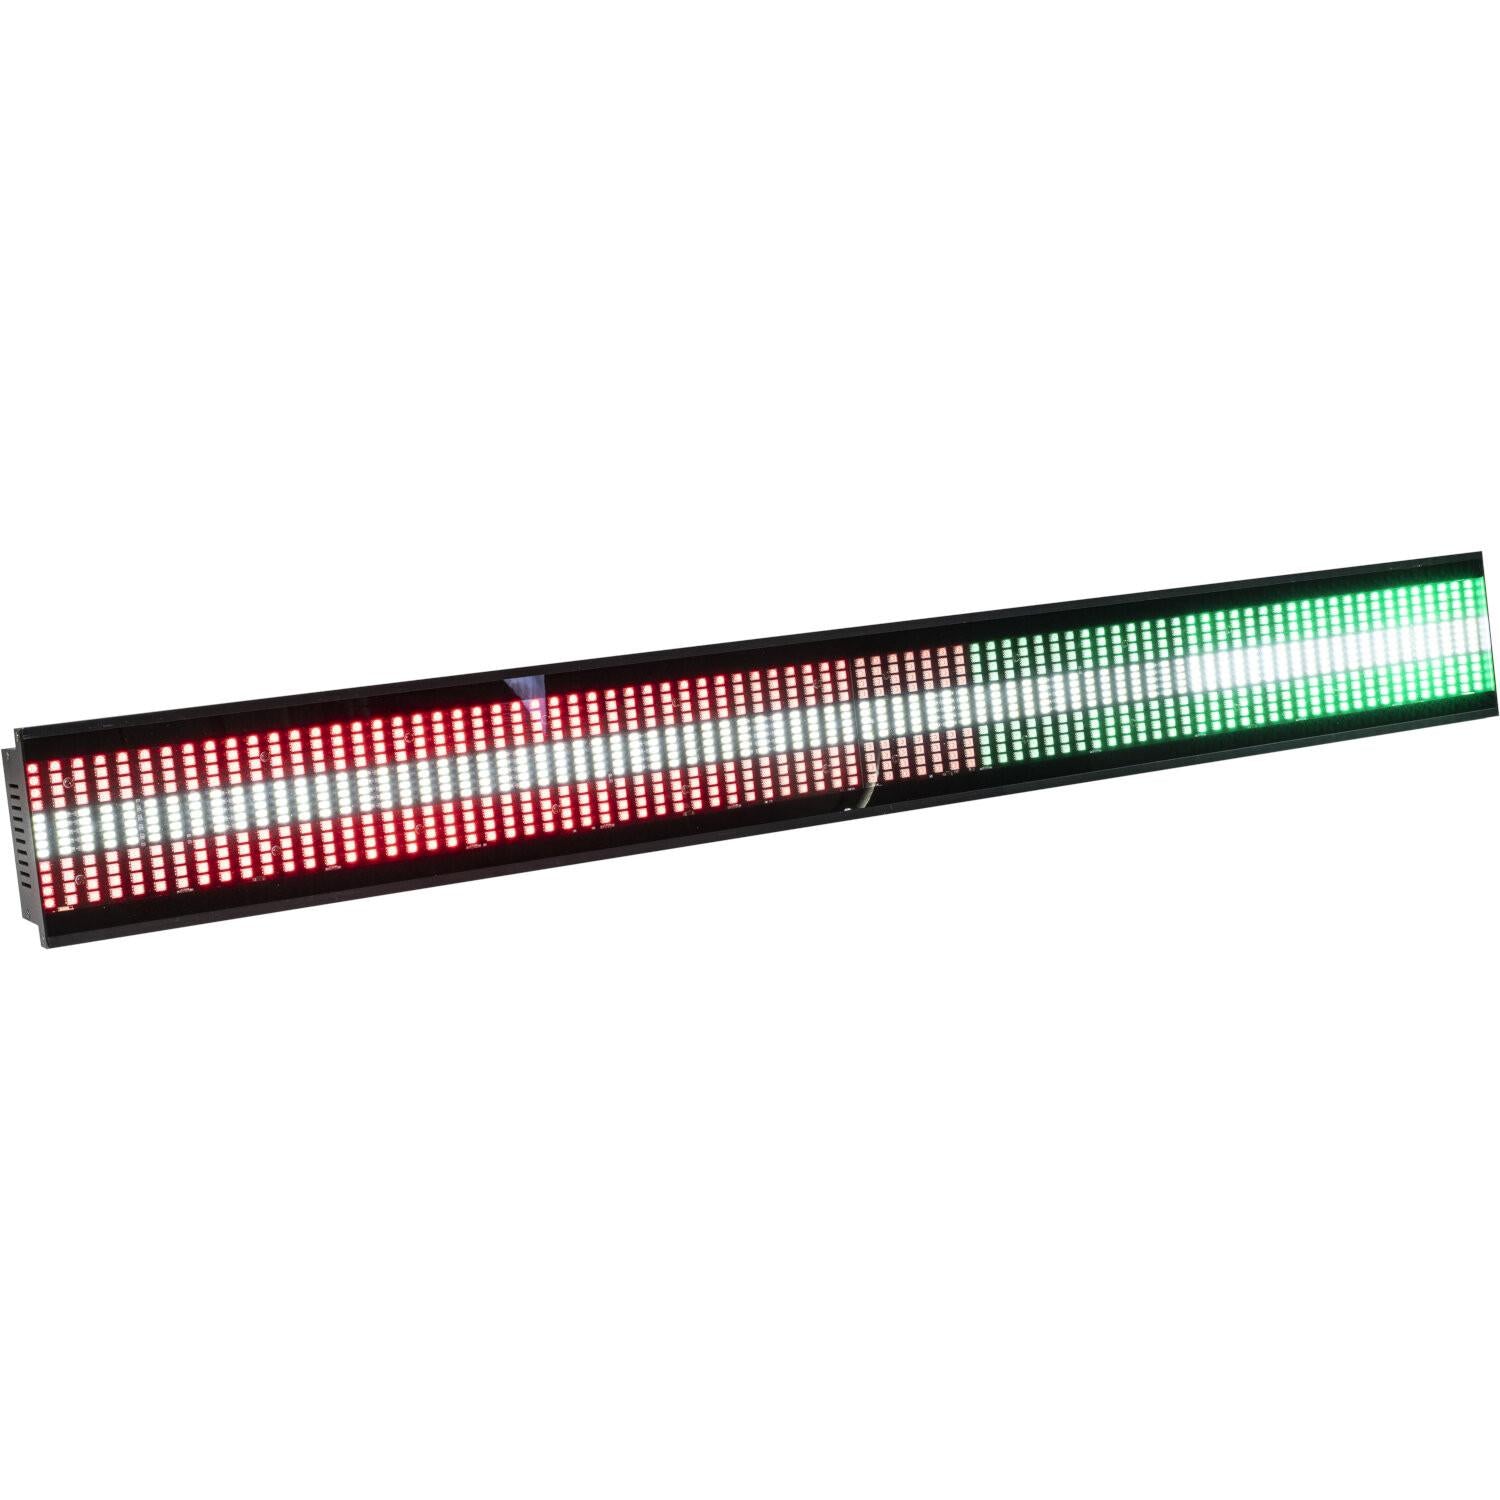 THUNDERLED Strobe LED Bar with RGB Effects